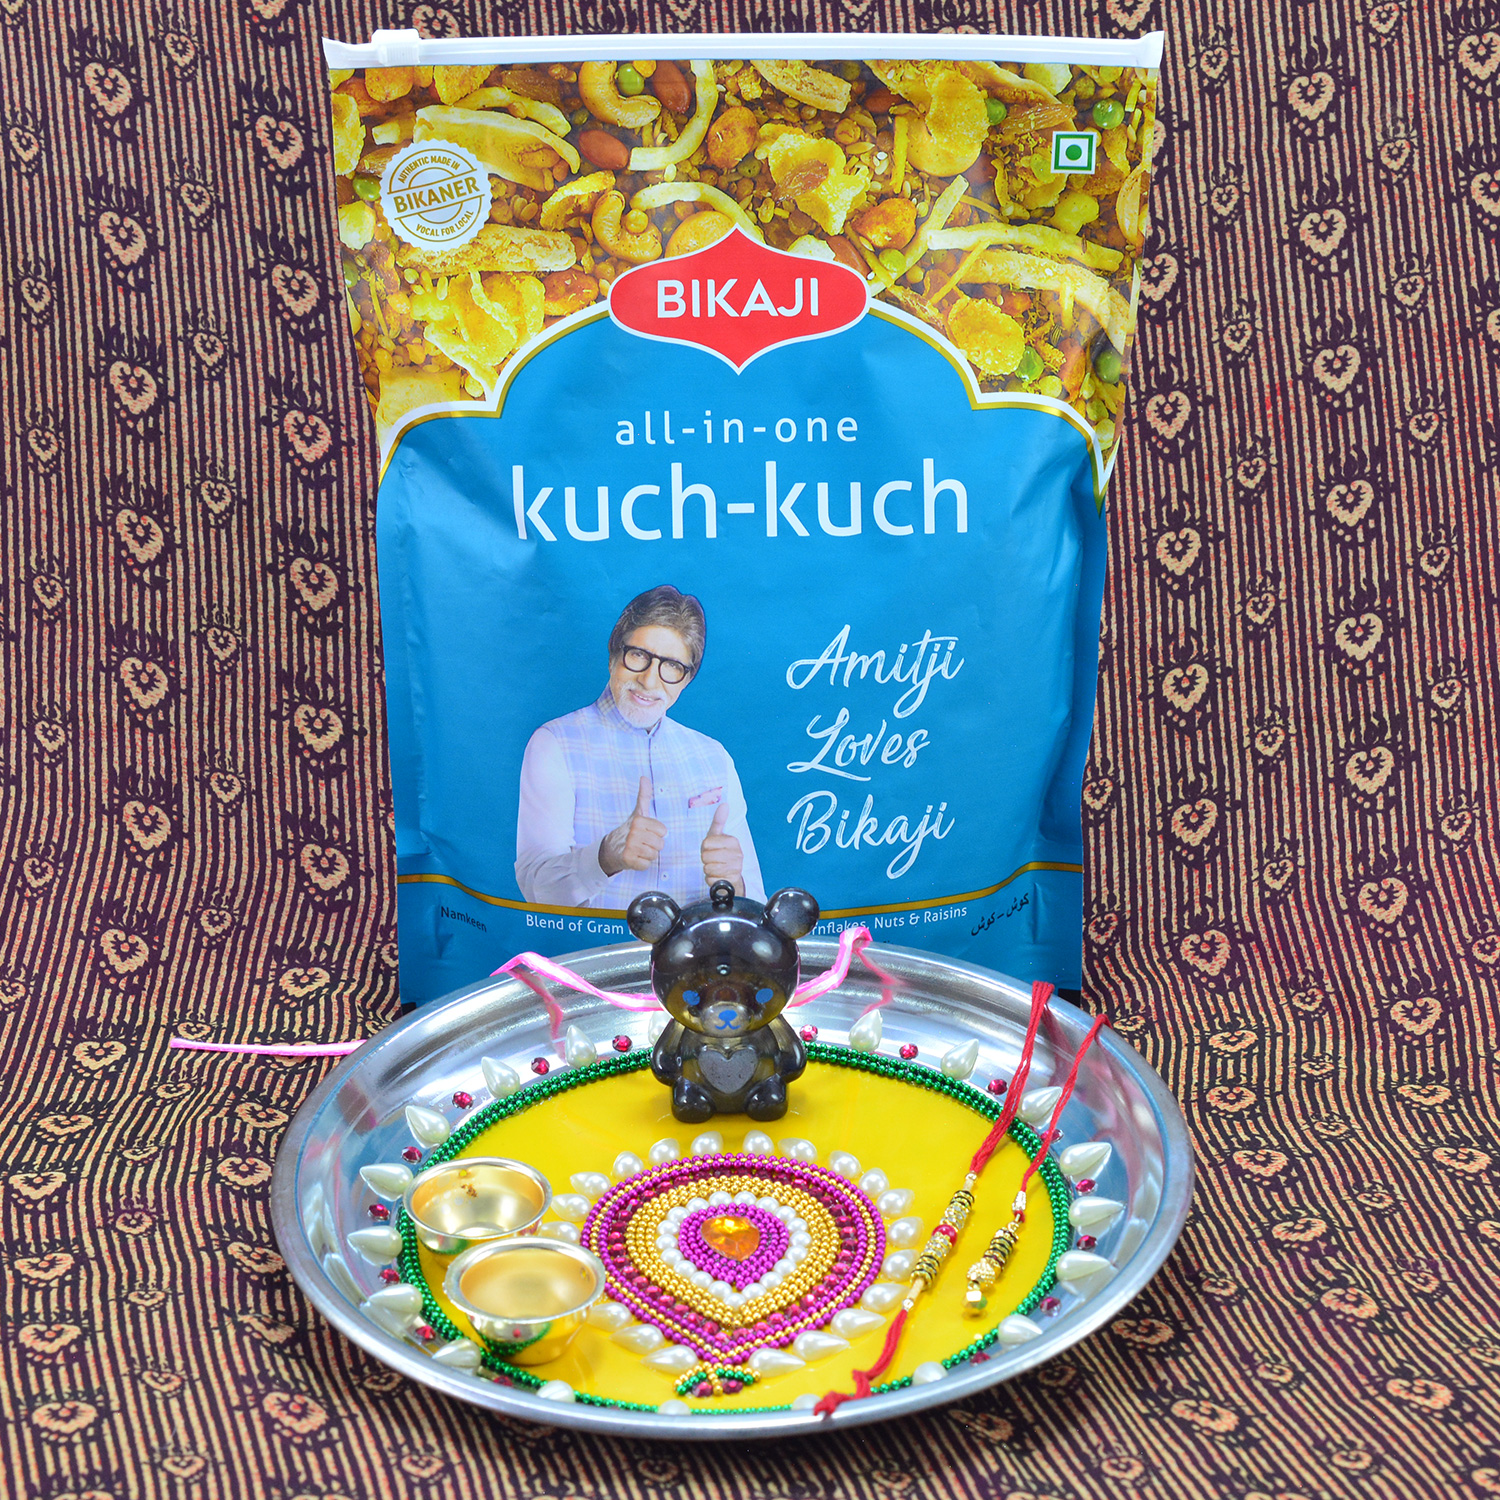 Bikaji Mixure Namkeen of All in One Kuch Kuch with Leaf Design Heavy Work Rakhi Puja Thali